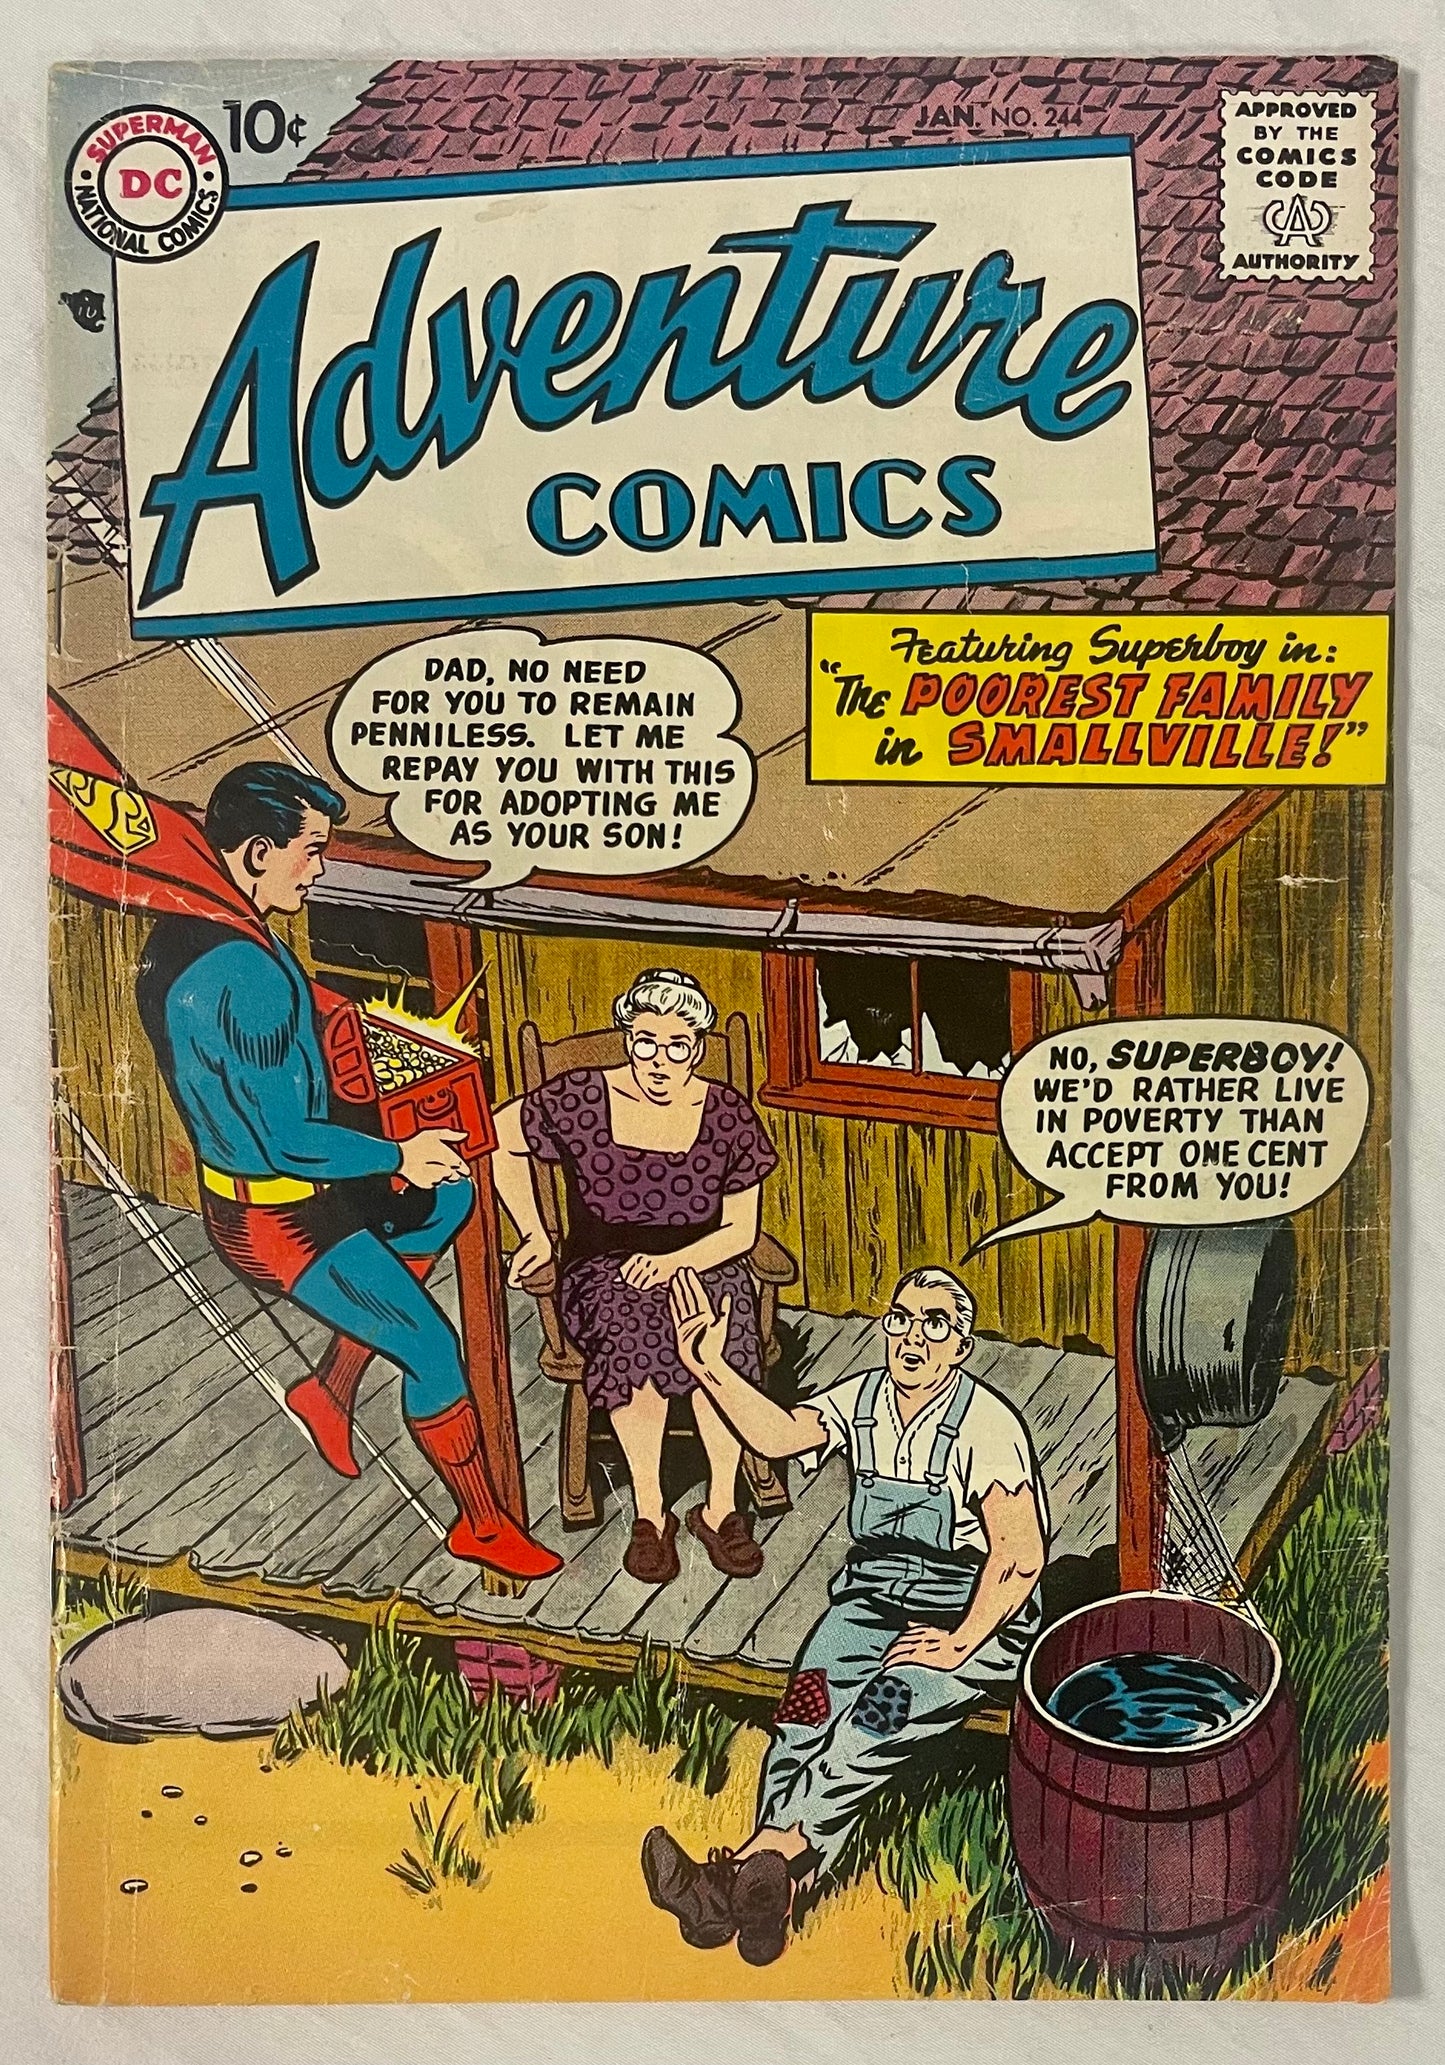 DC Comics Adventure Comics No. 244